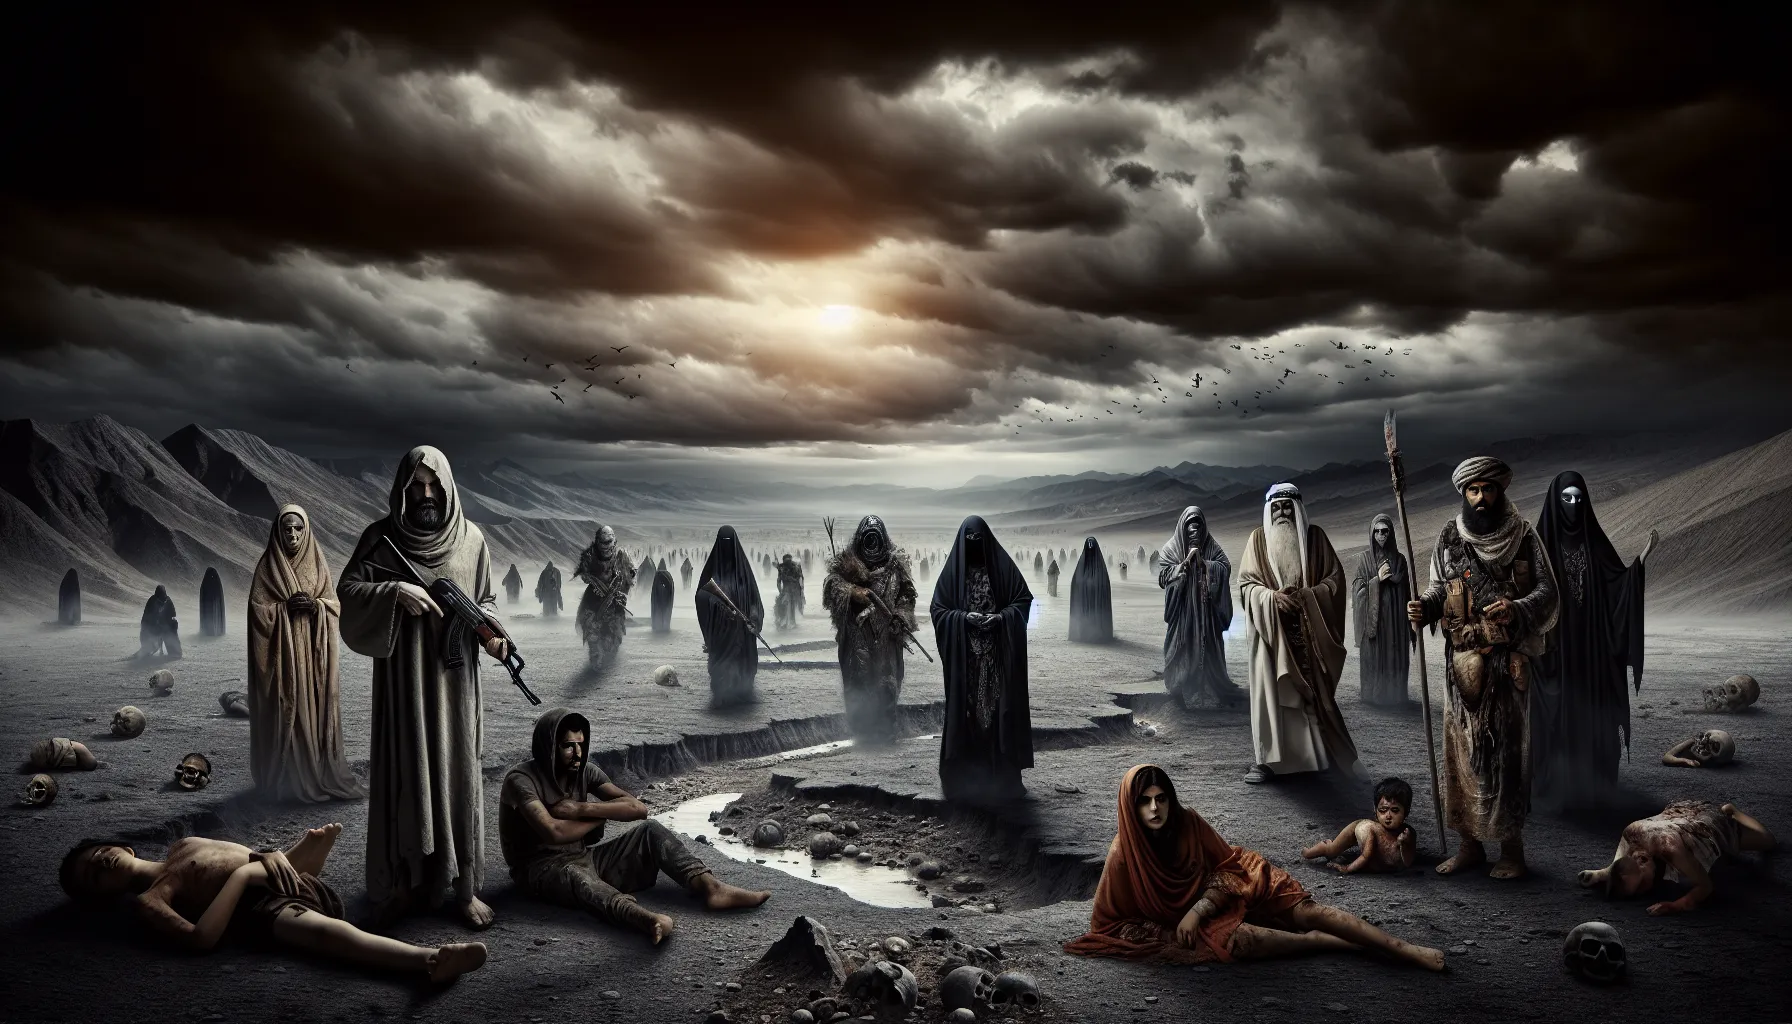 Representación gráfica de un paisaje desolado con personajes apocalípticos, simbolizando el fin del mundo y el juicio final.